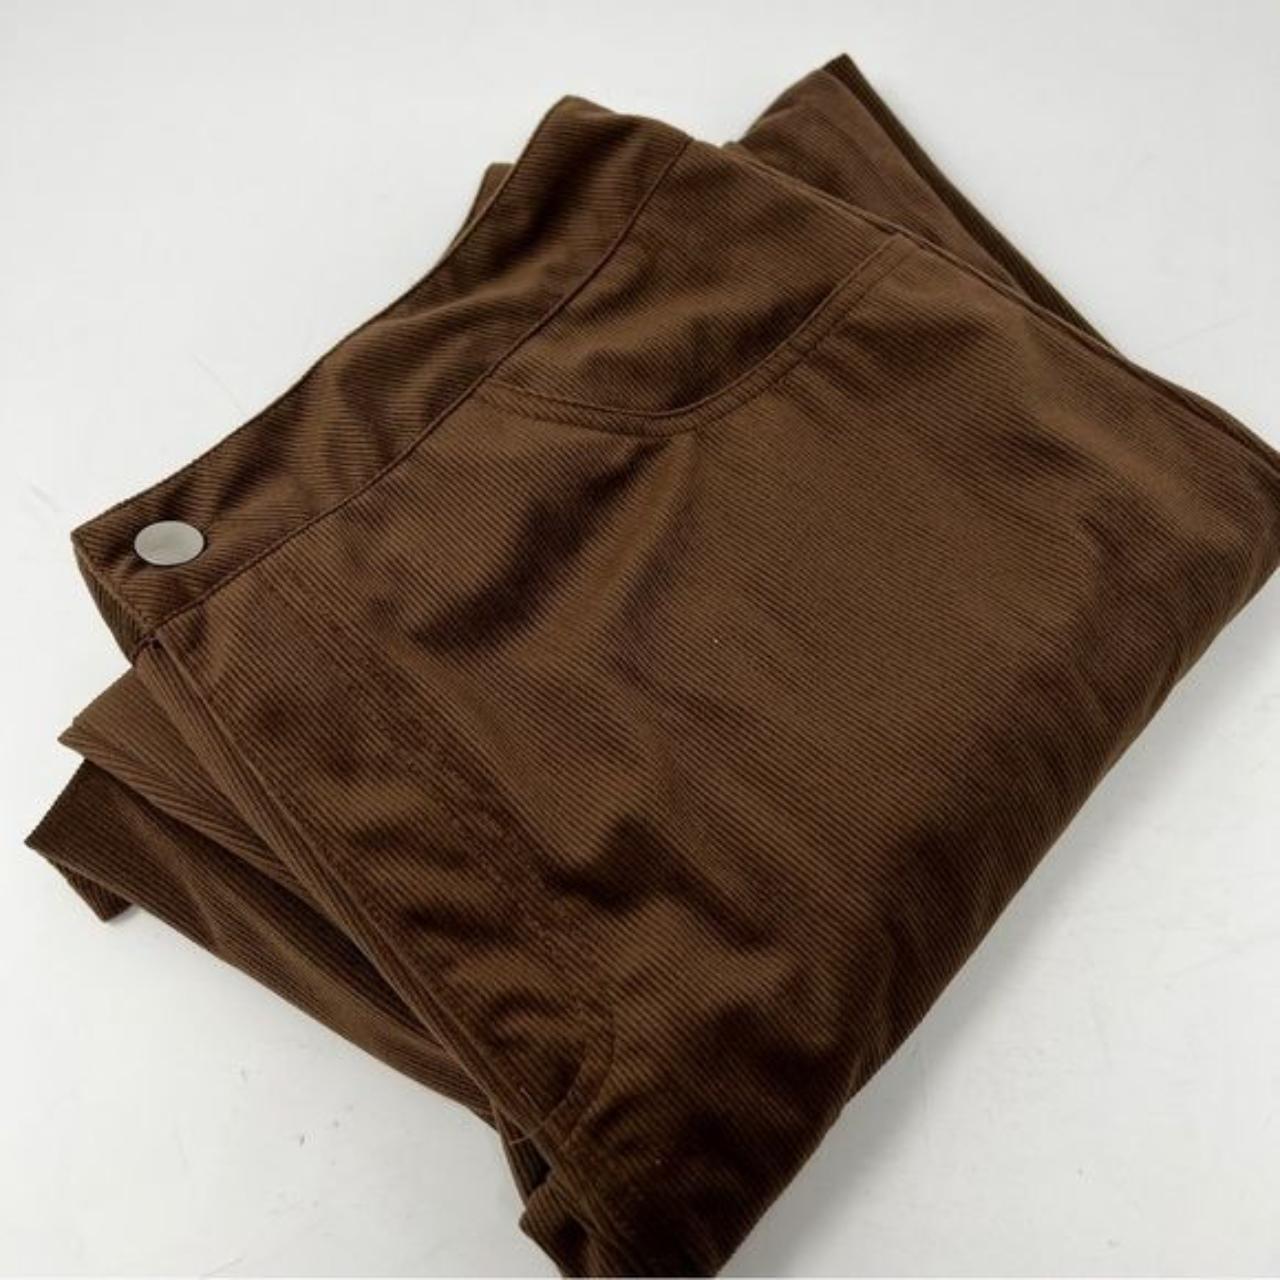 Brown Corduroy Flare Pants BIN L 17” flat measure - Depop